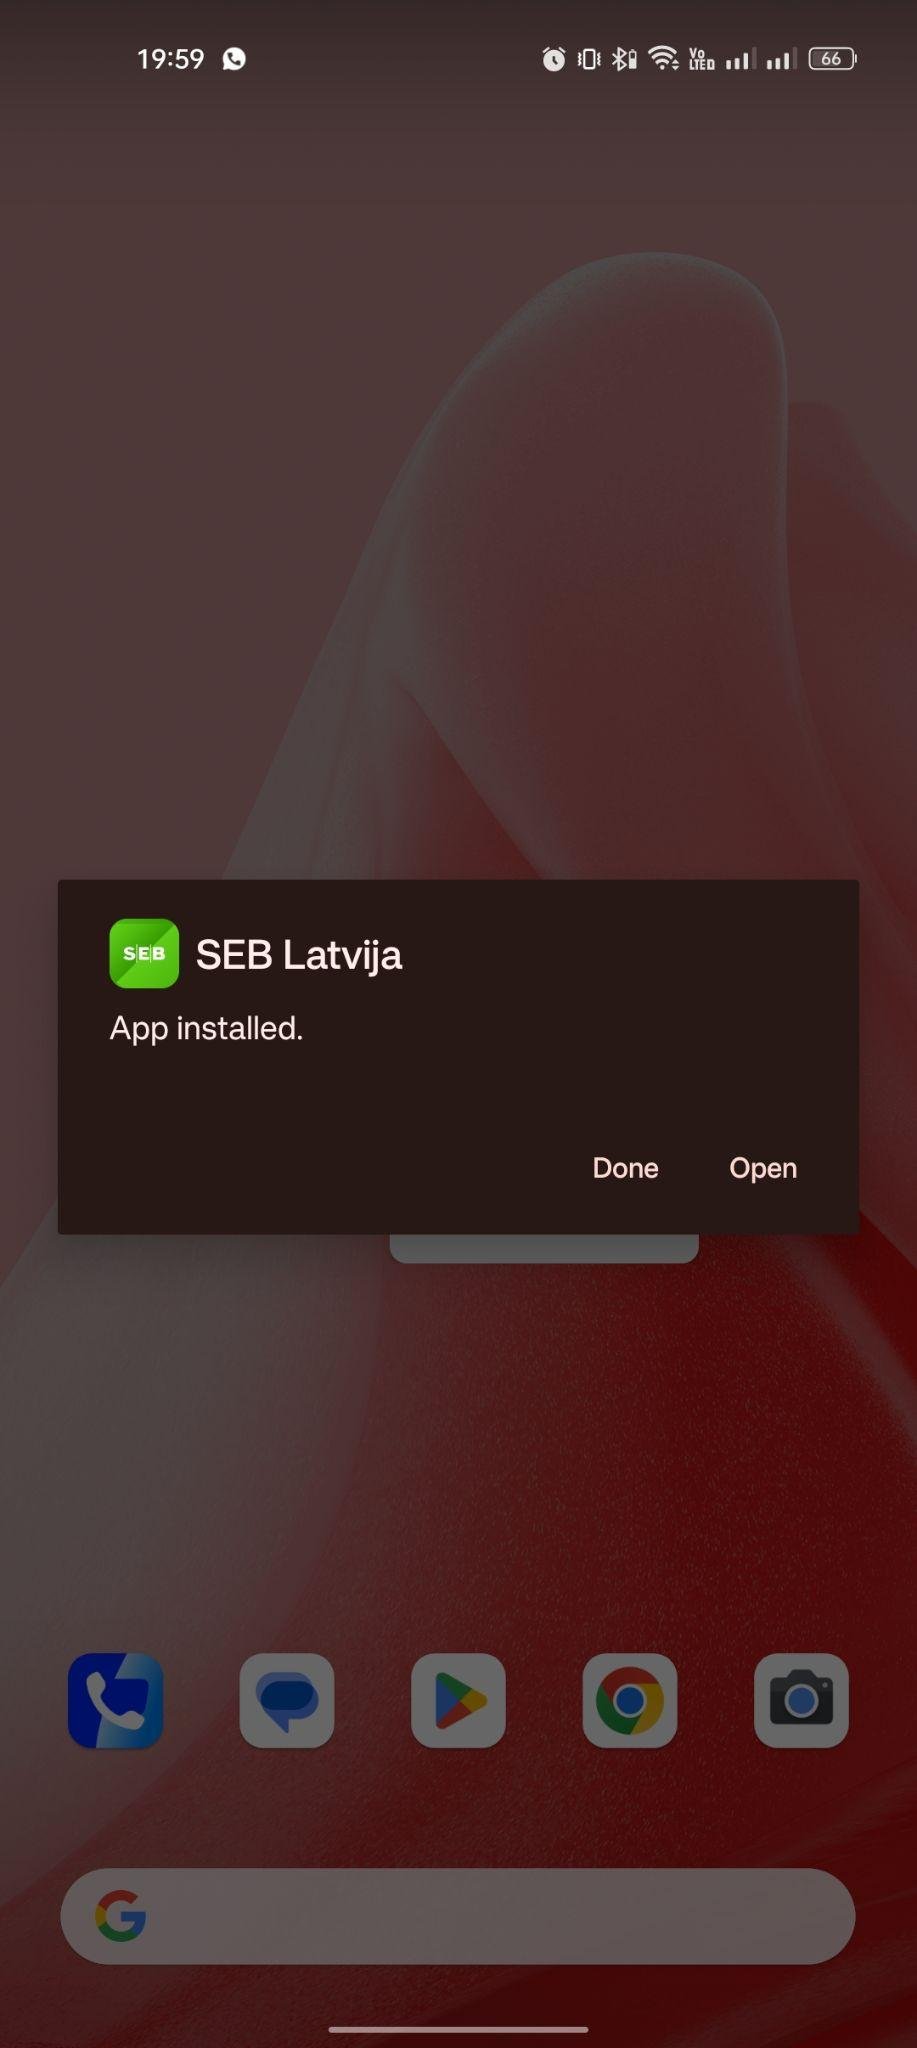 SEB Latvia apk installed